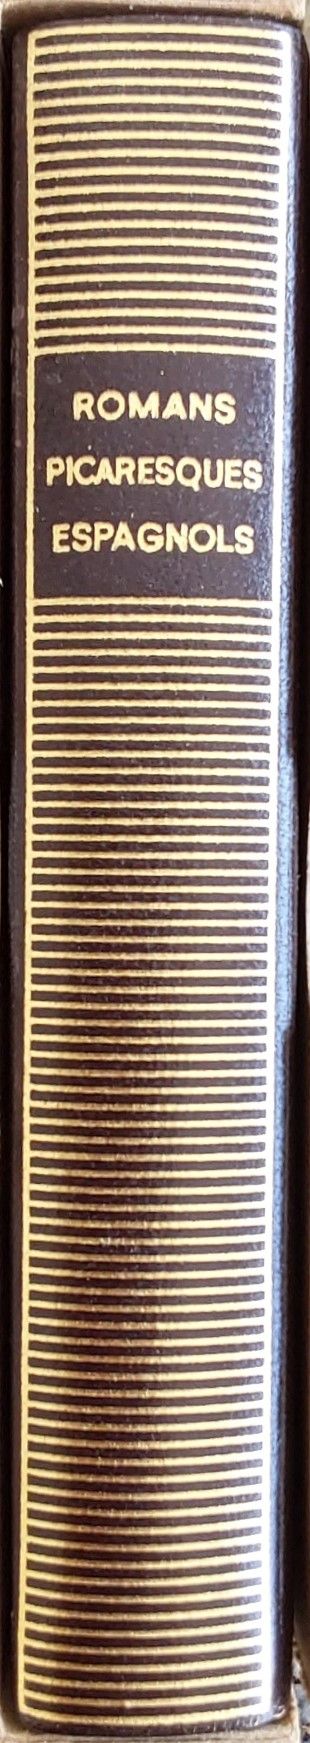 Volume 198 de Collectifs du XVIIeme dans la Bibliothèque de la Pléiade.